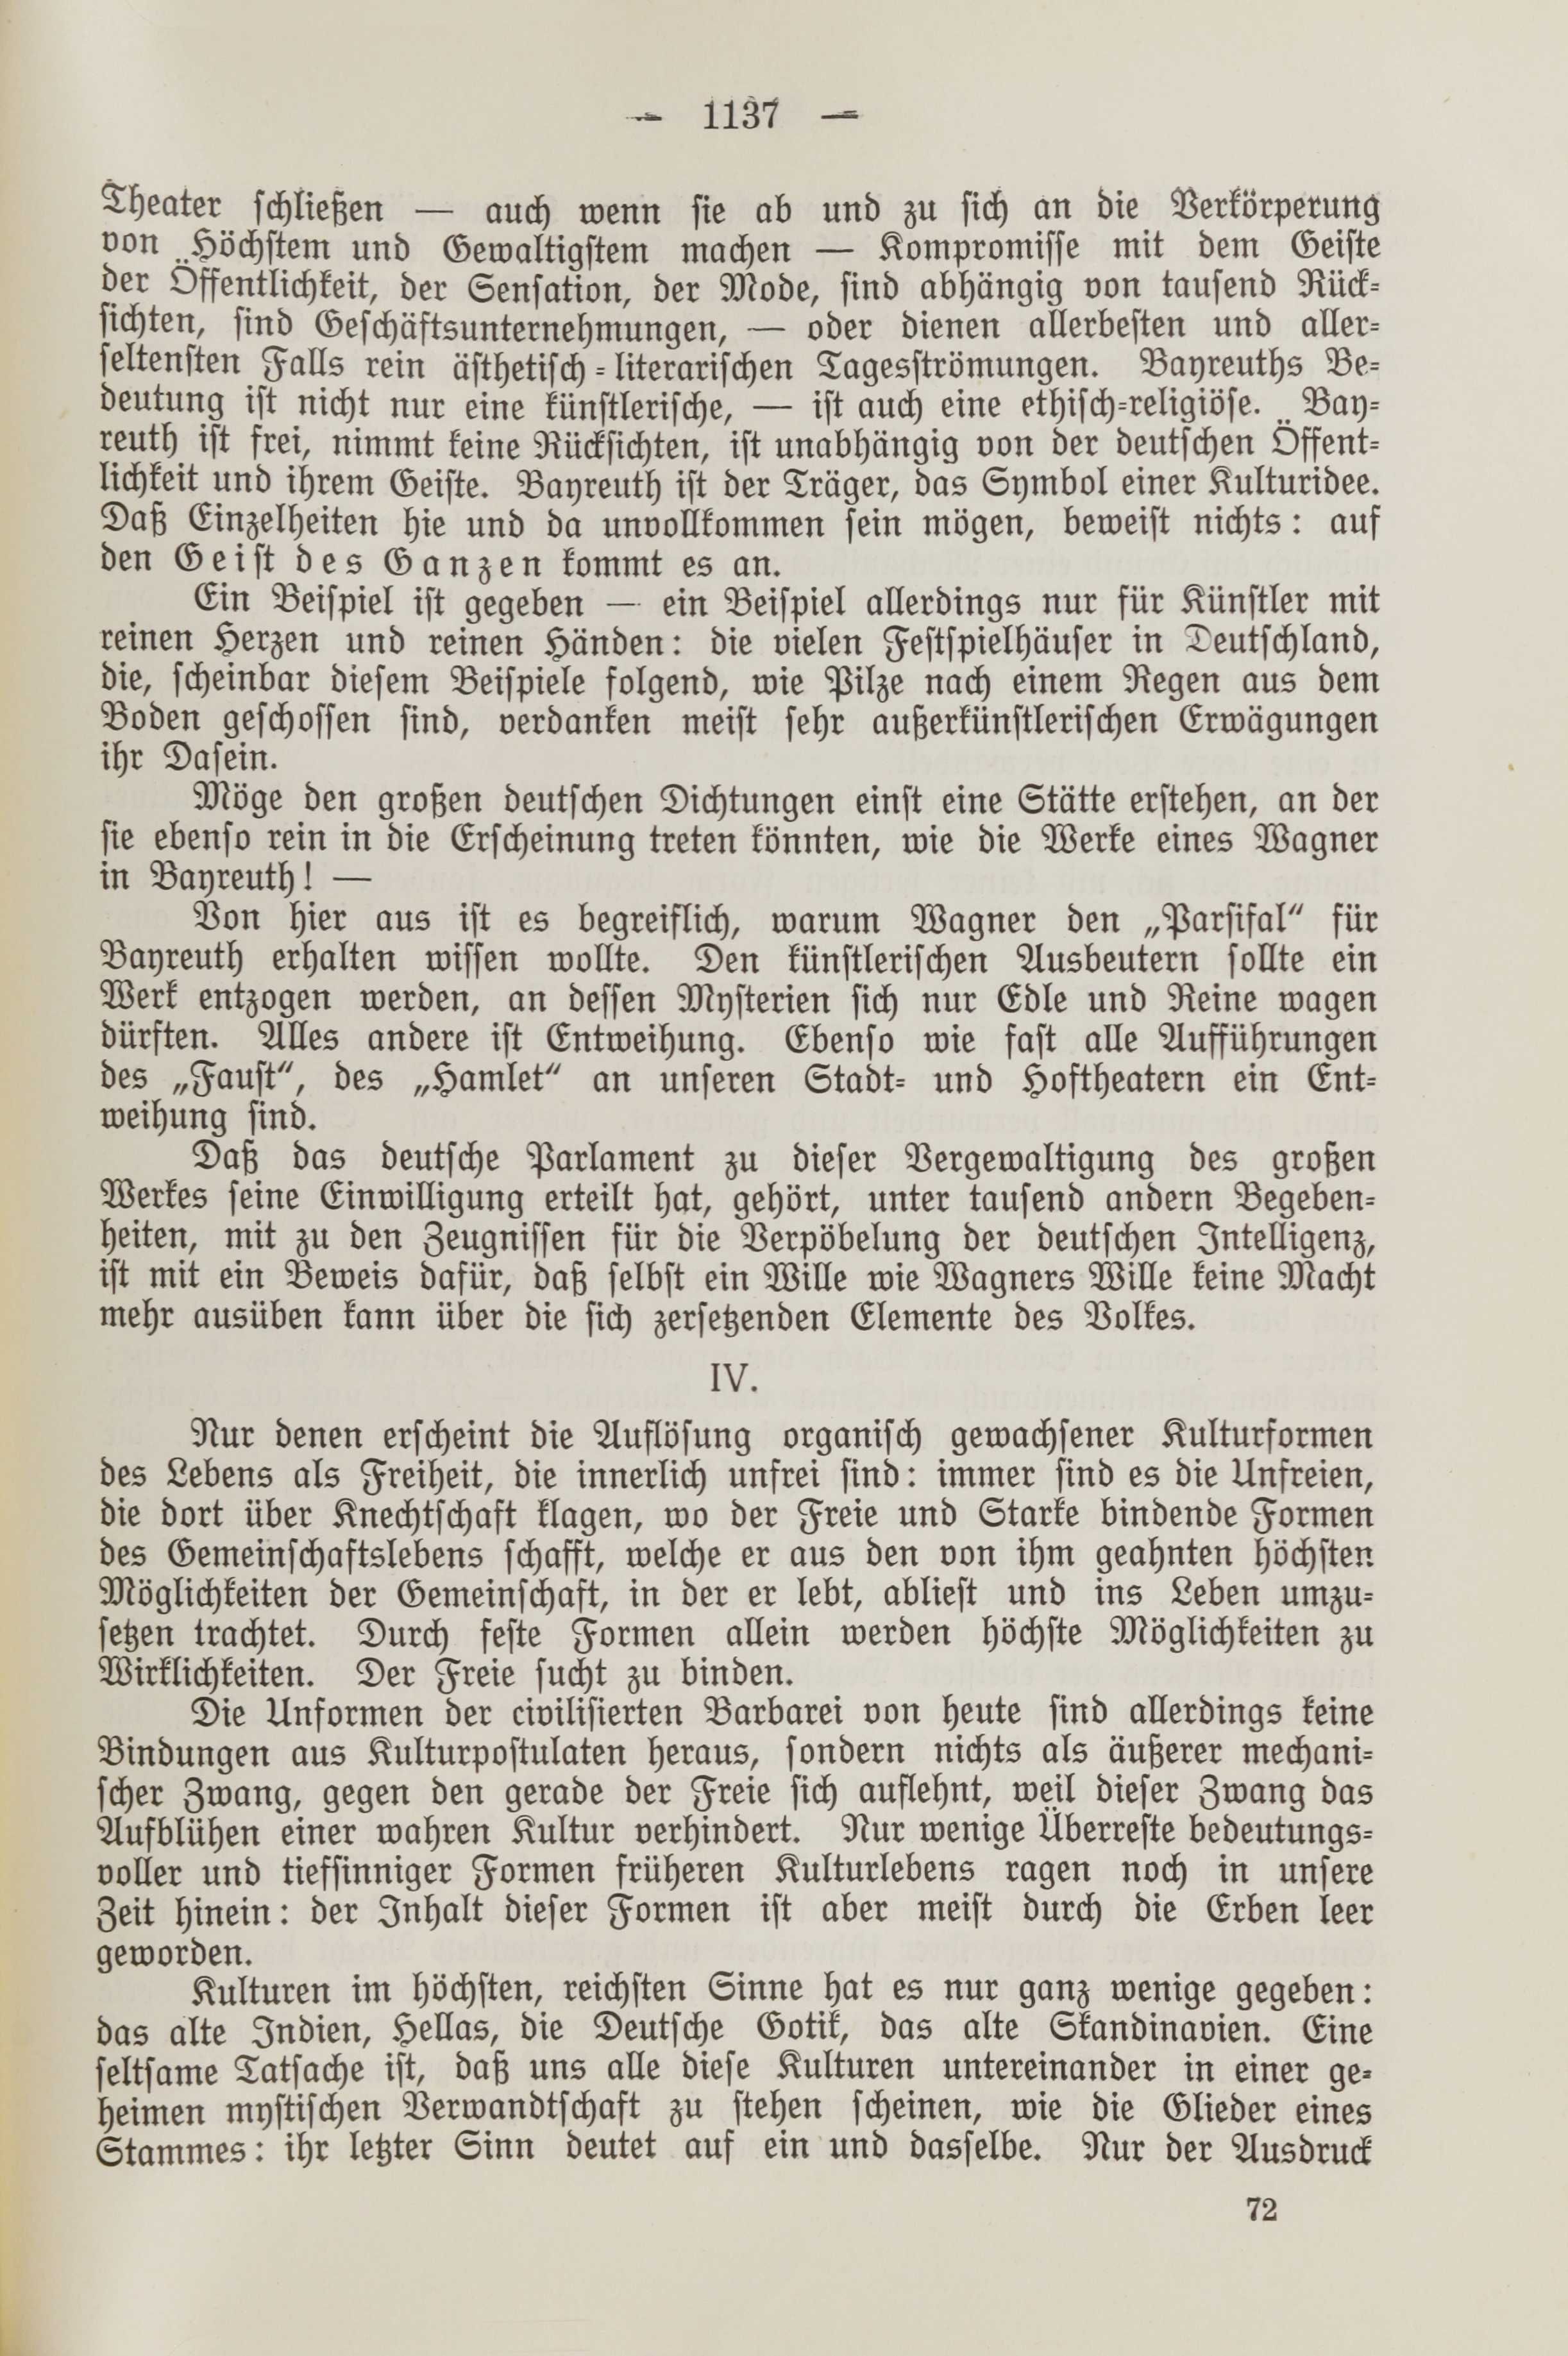 Deutsche Monatsschrift für Russland [2] (1913) | 1144. (1137) Main body of text